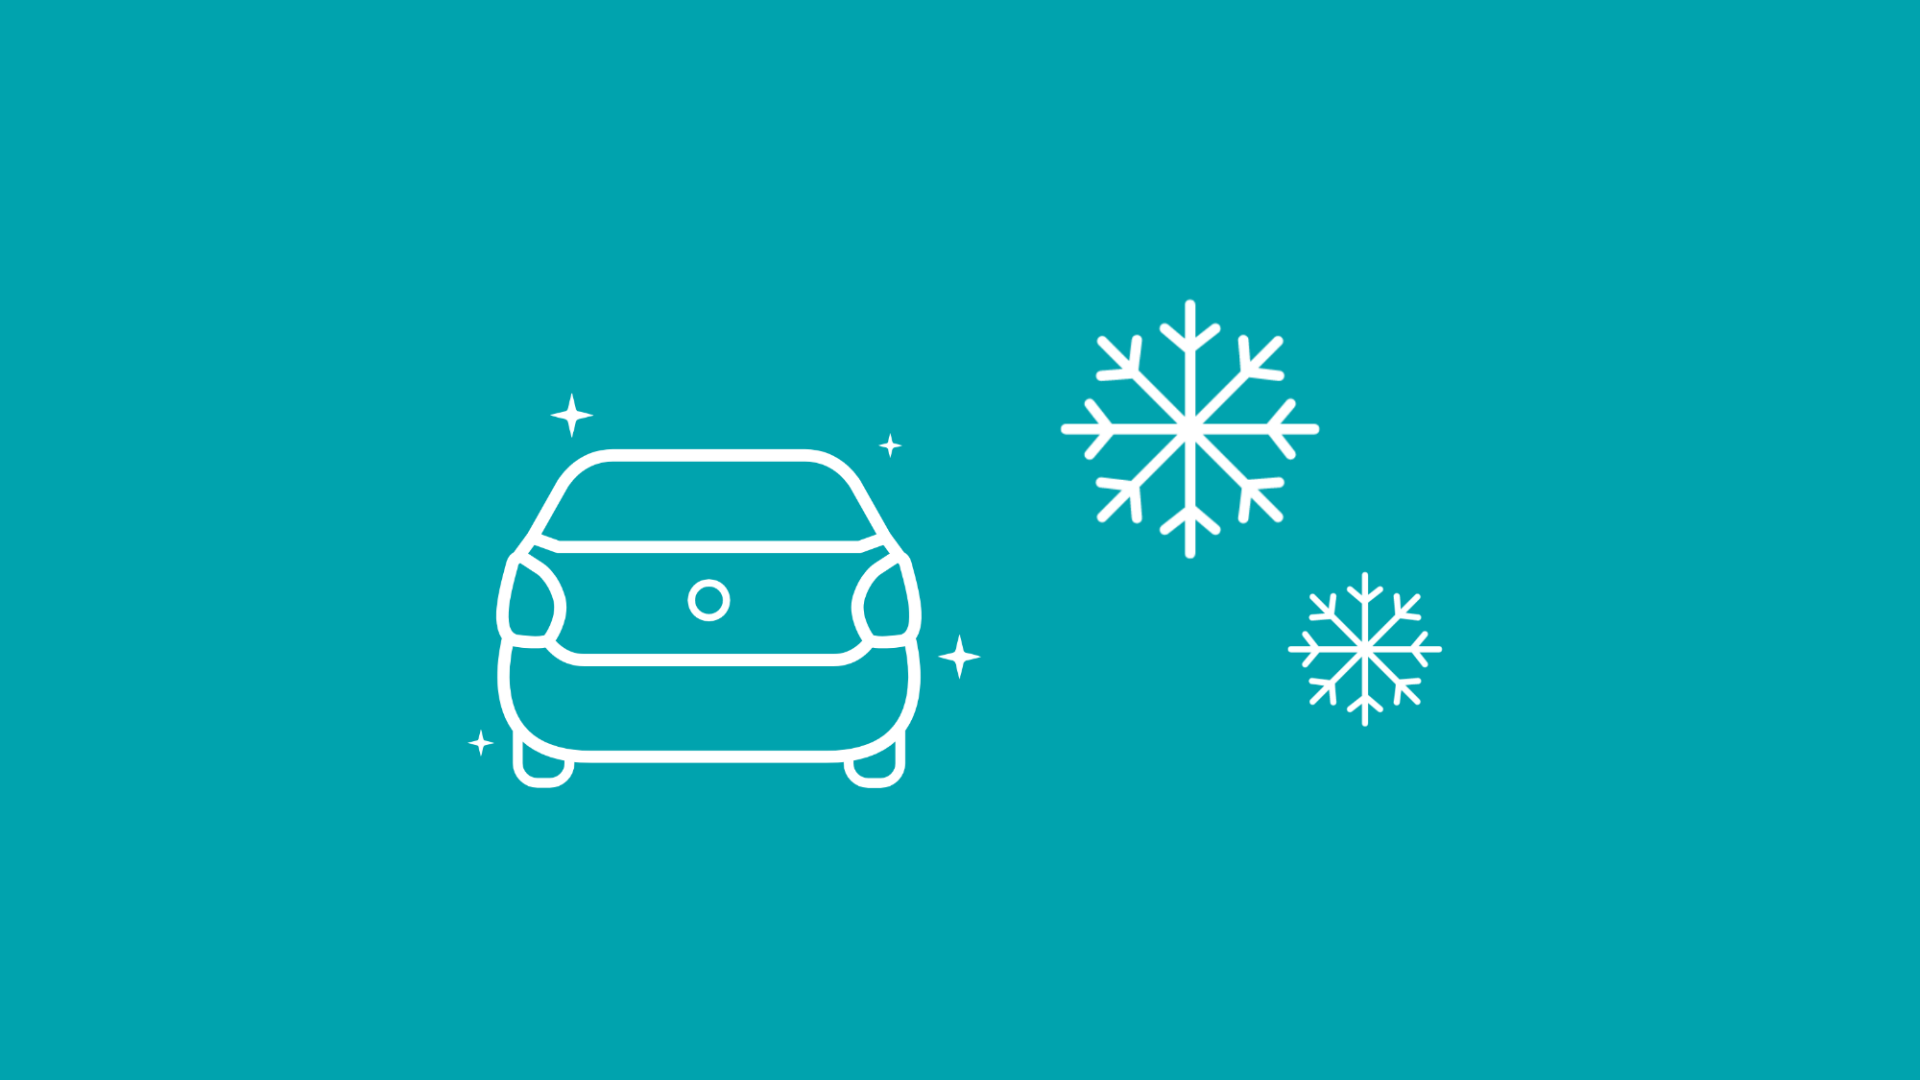 Abgebildet ist ein E-Auto neben Schneeflocken, was den Urlaub mit dem E-Auto im Winter symbolisiert.